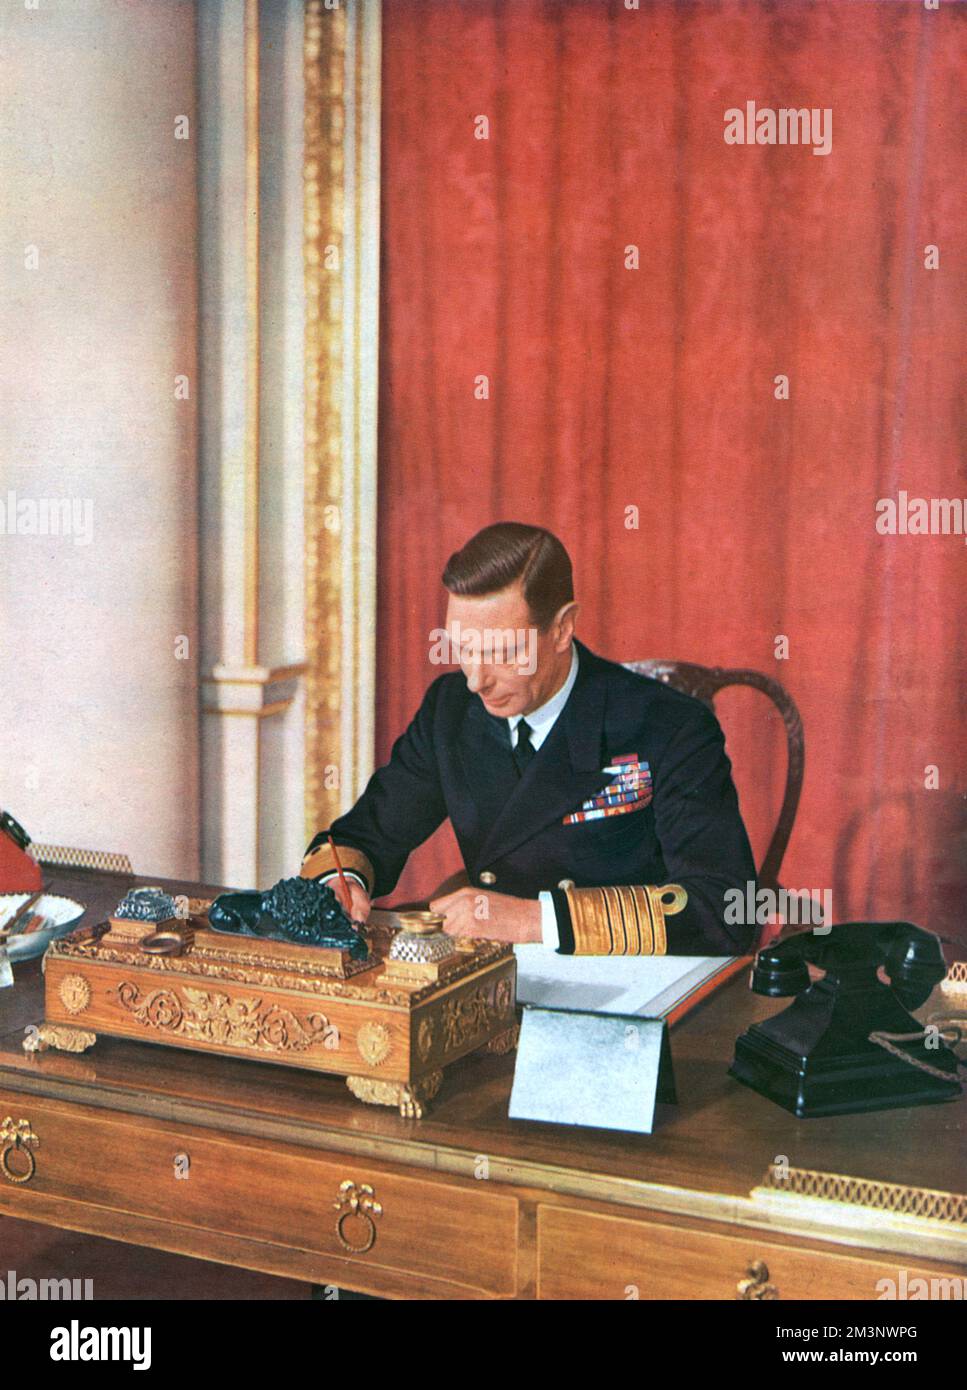 König George VI. (1895 - 1952), im Mai 1942 in Marineuniform an seinem Schreibtisch im Buckingham Palace. Eine exklusive Fotosession, die speziell für die illustrierten London News zum hundertsten Geburtstag dieser Zeit gewährt wurde. Datum: 1942 Stockfoto